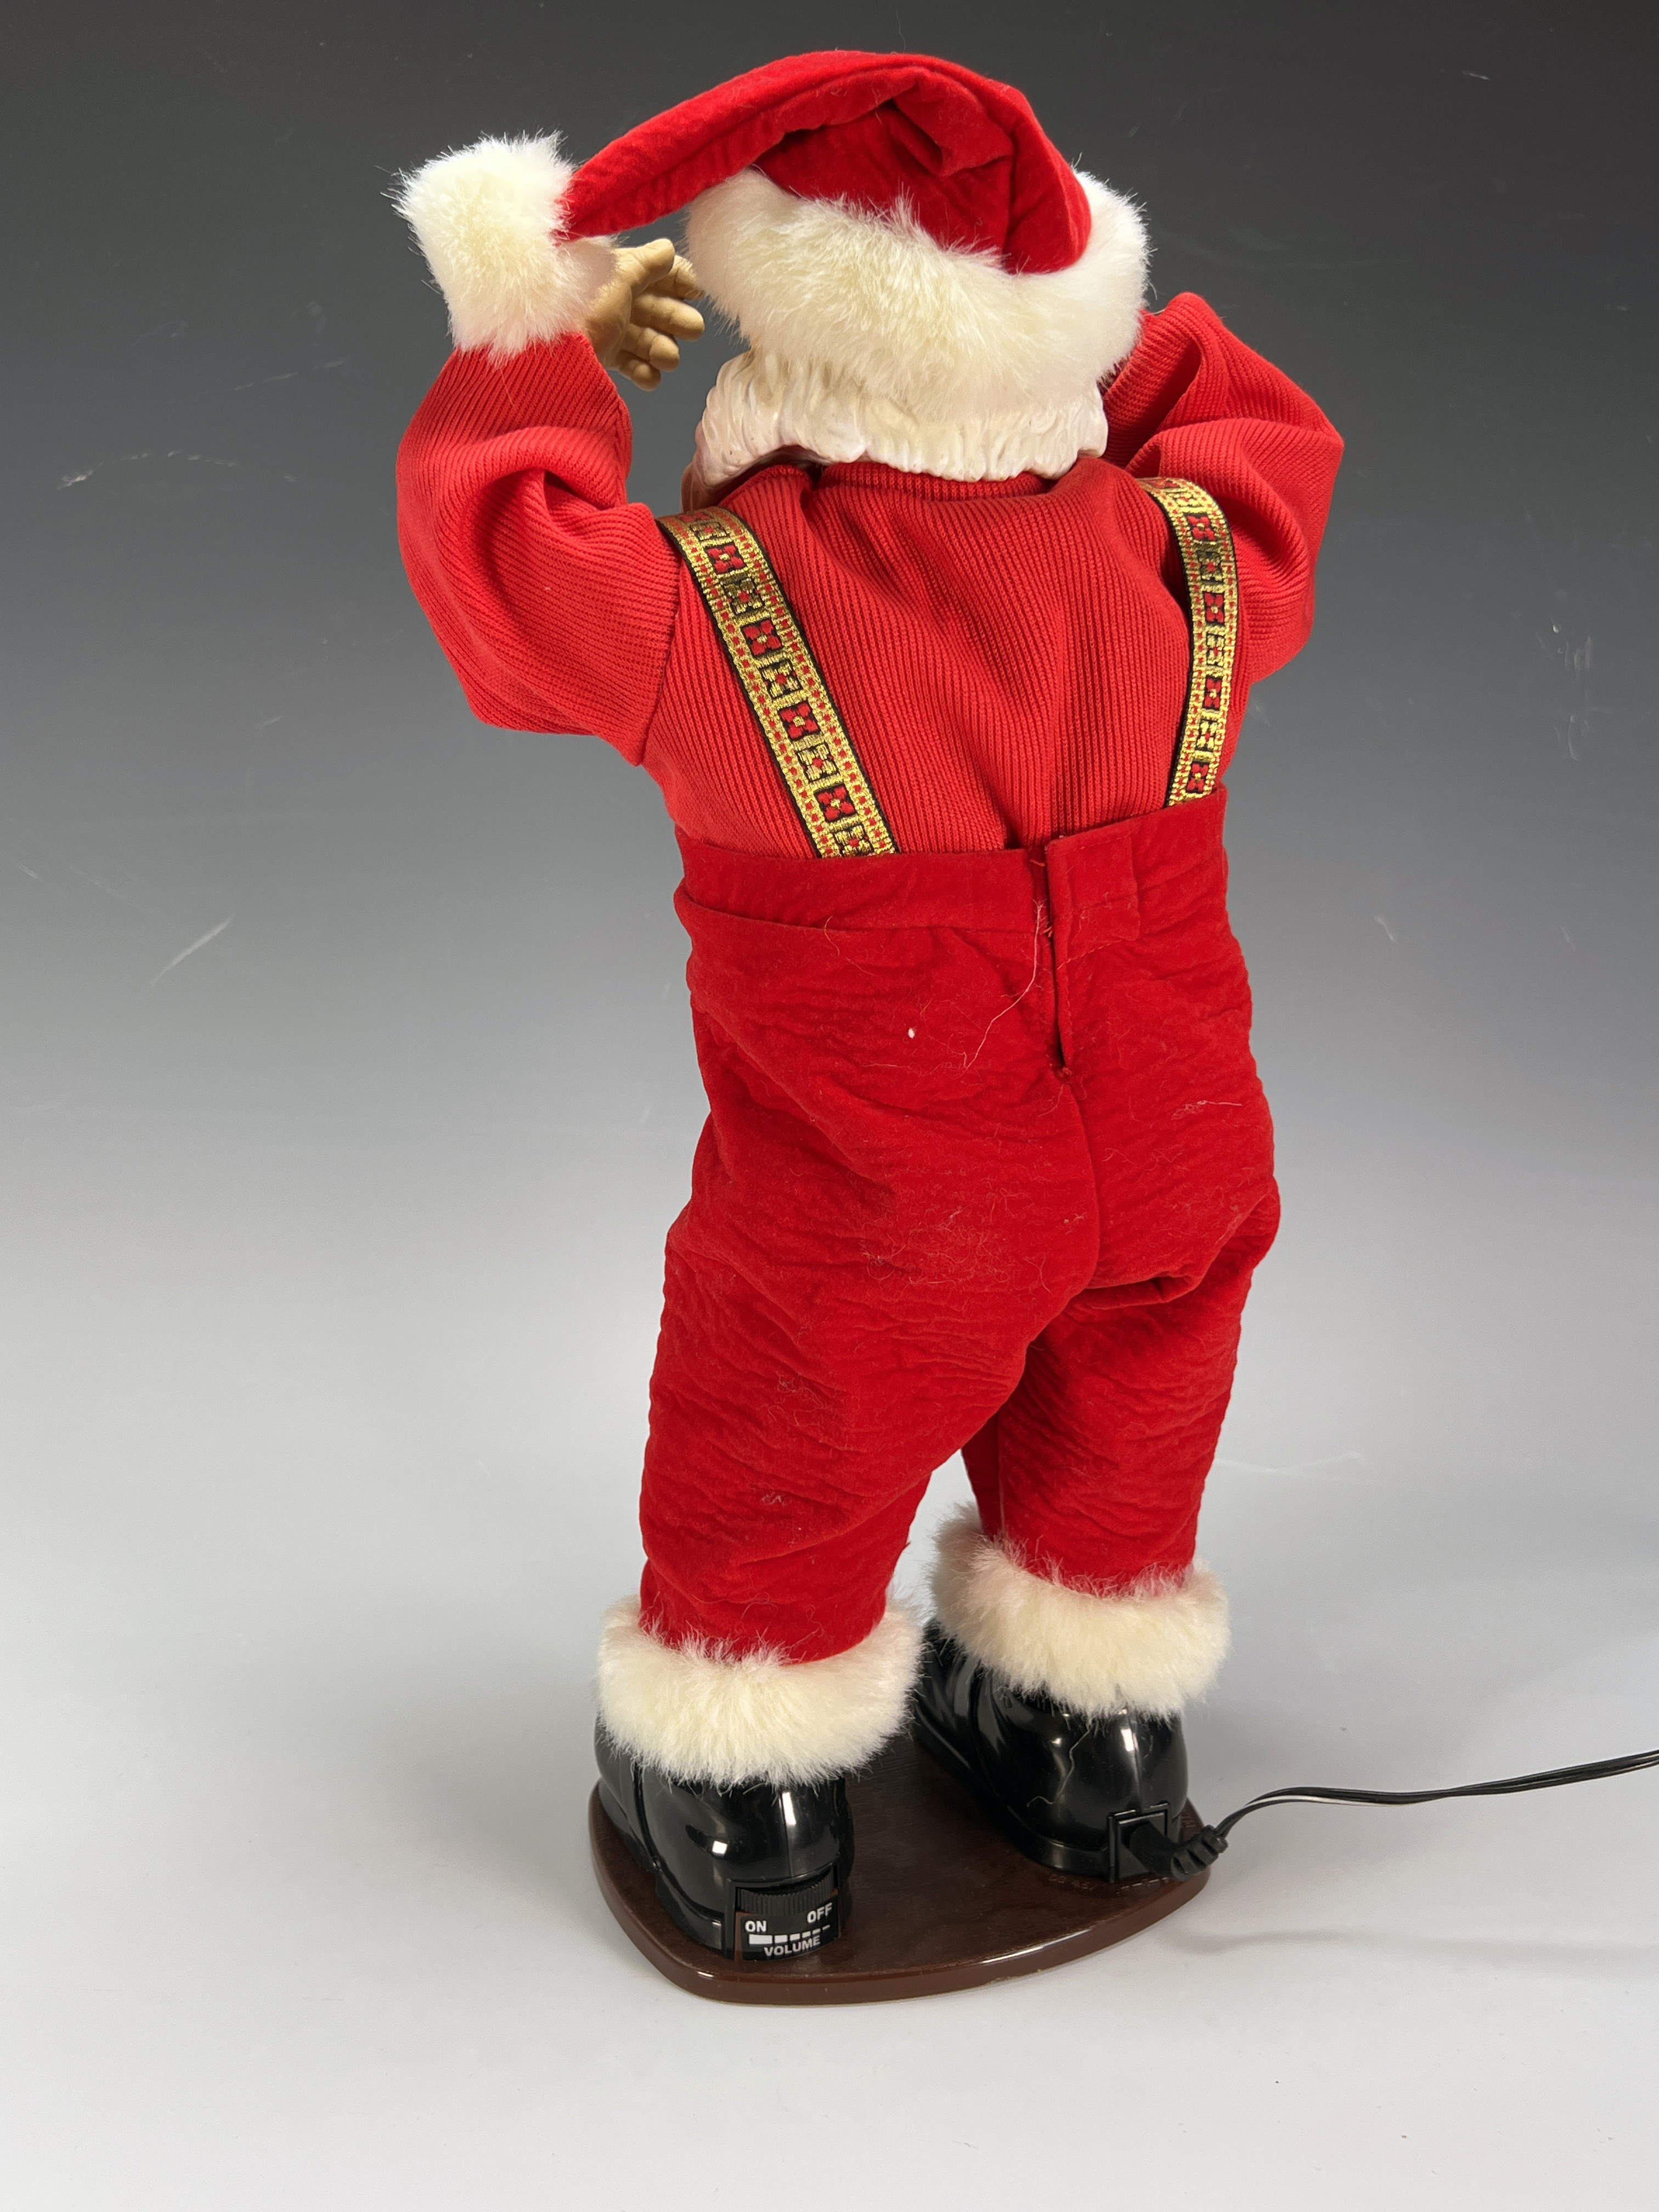 Dancing Jingle Bell Rock Santa In Box image 2